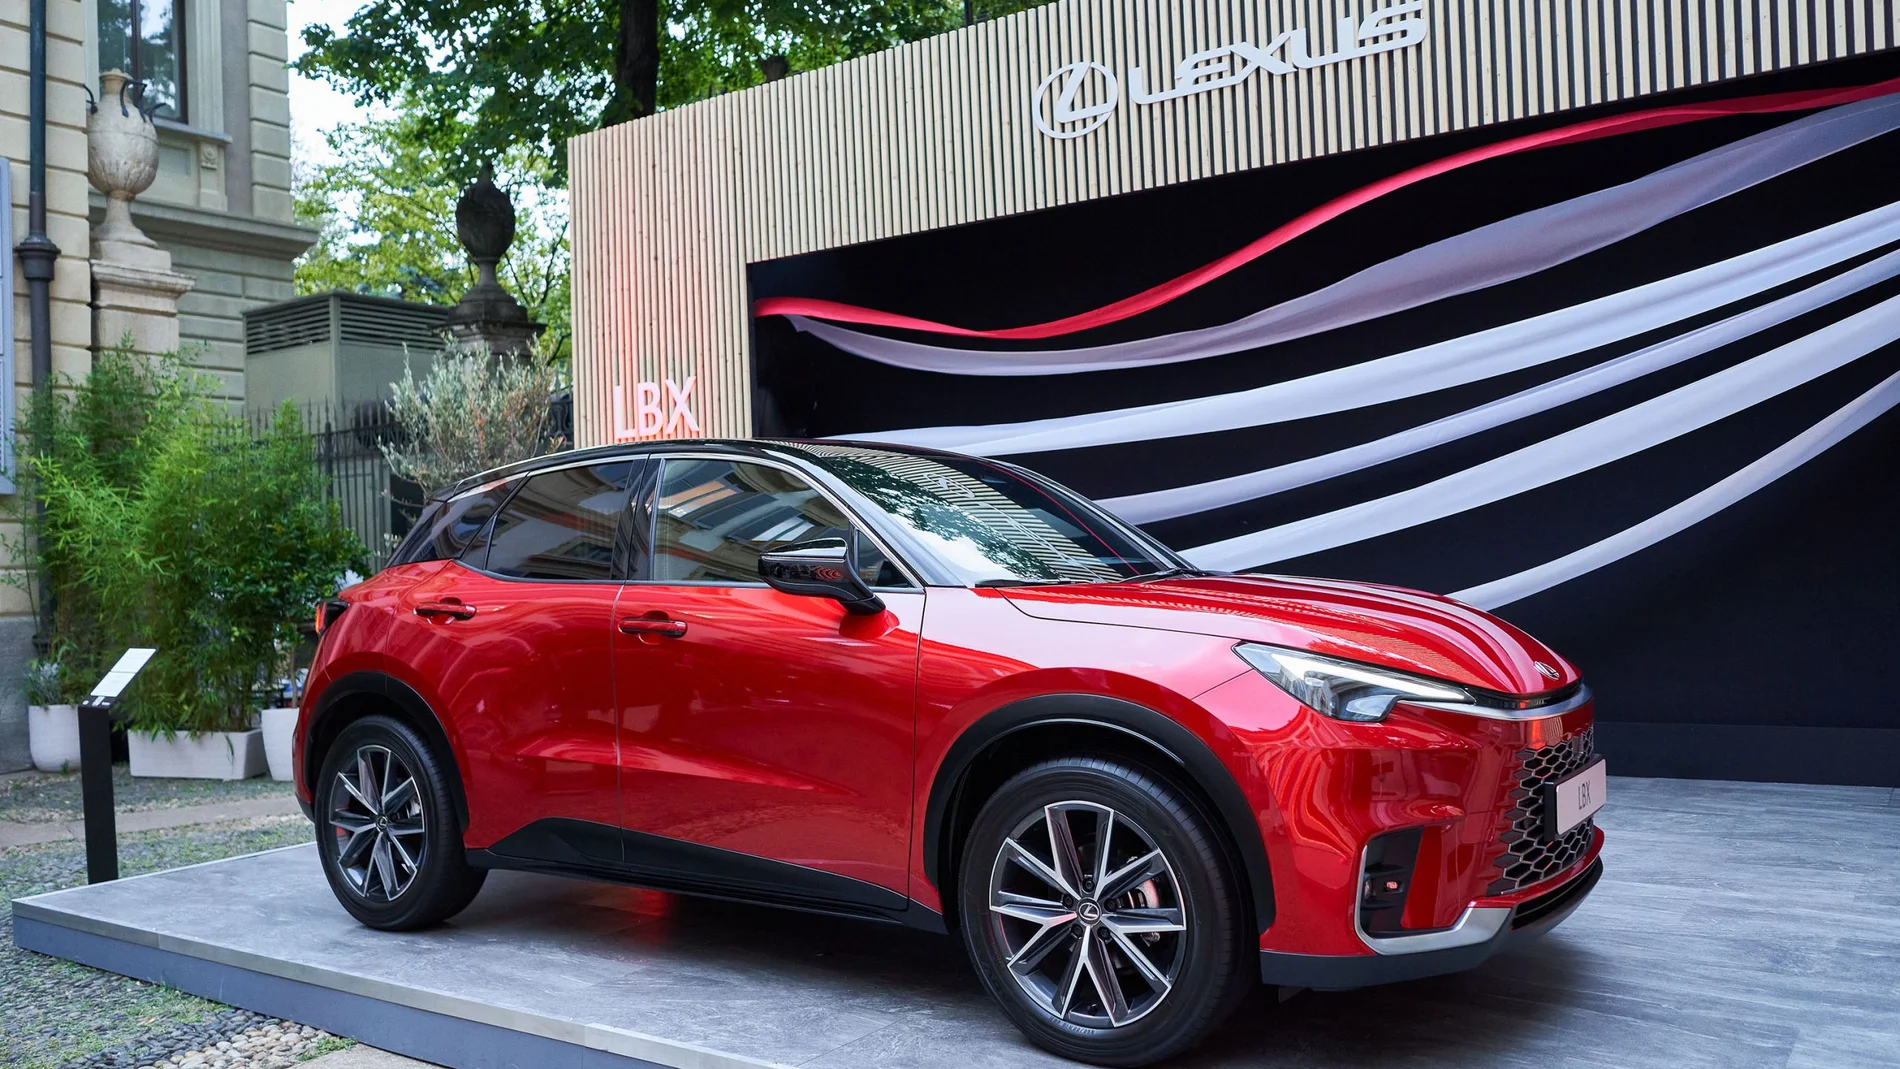 Lexus celebra el éxito de la experiencia LBX en Milán